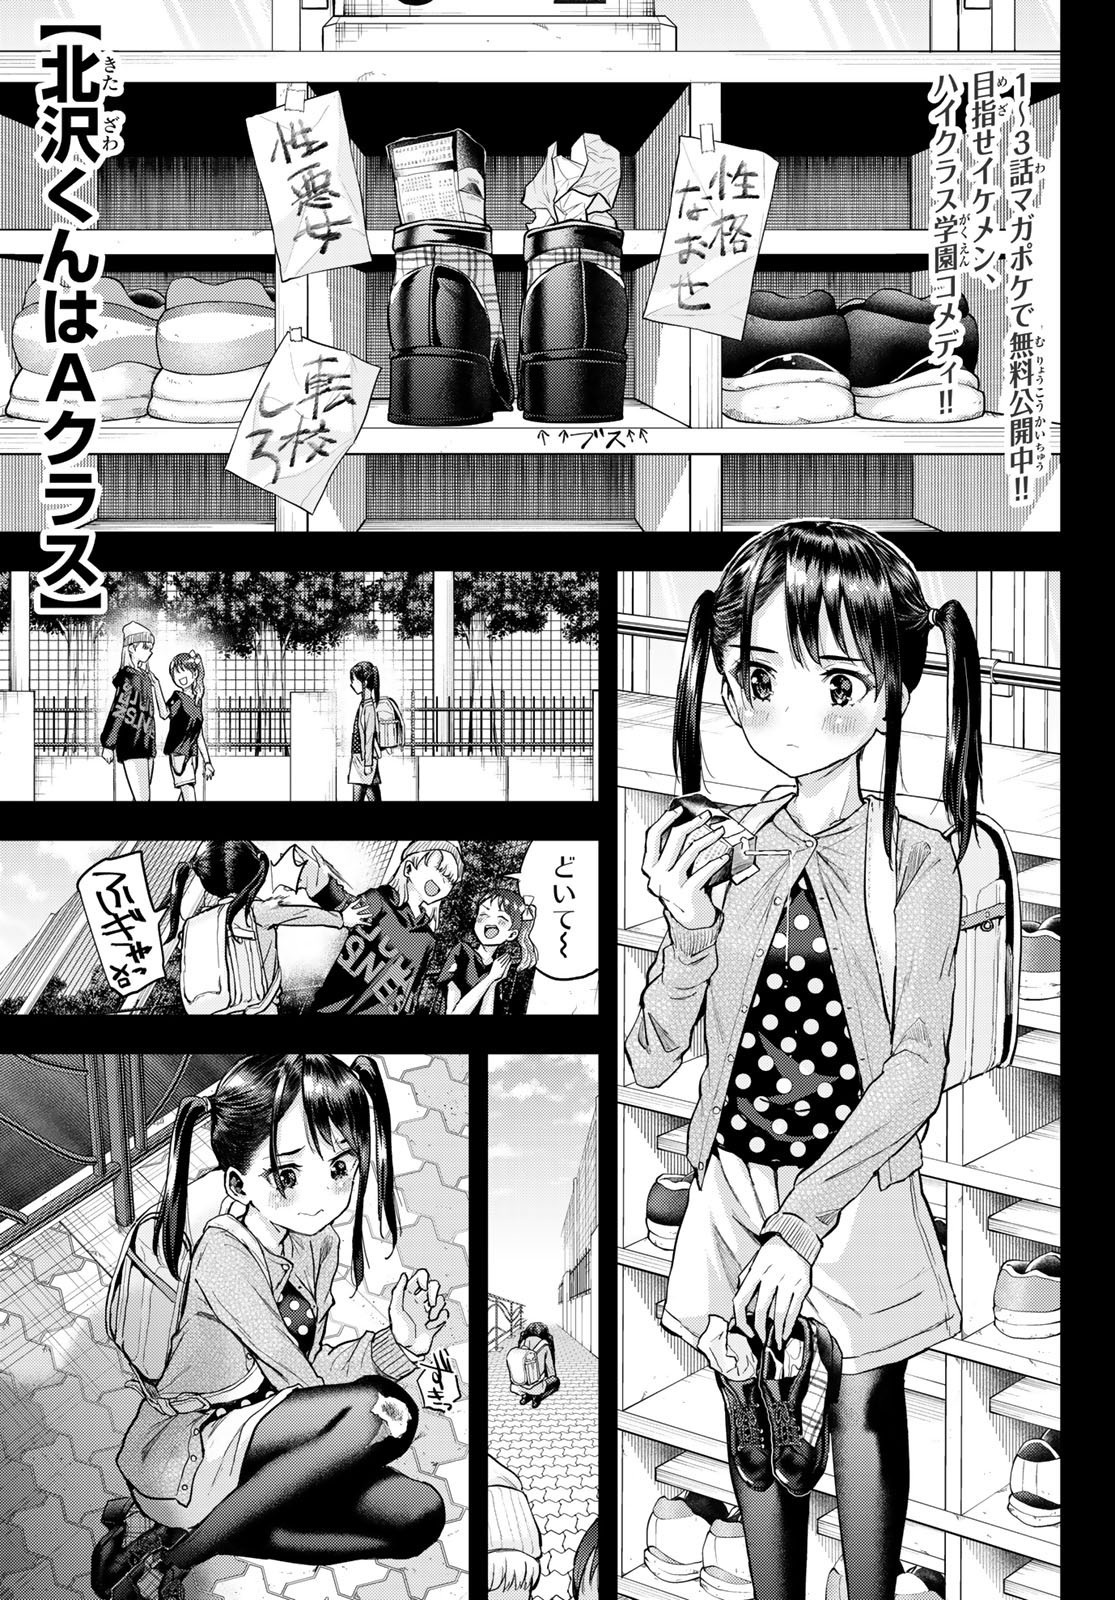 Kitazawa-kun wa A Class - Chapter 006 - Page 1